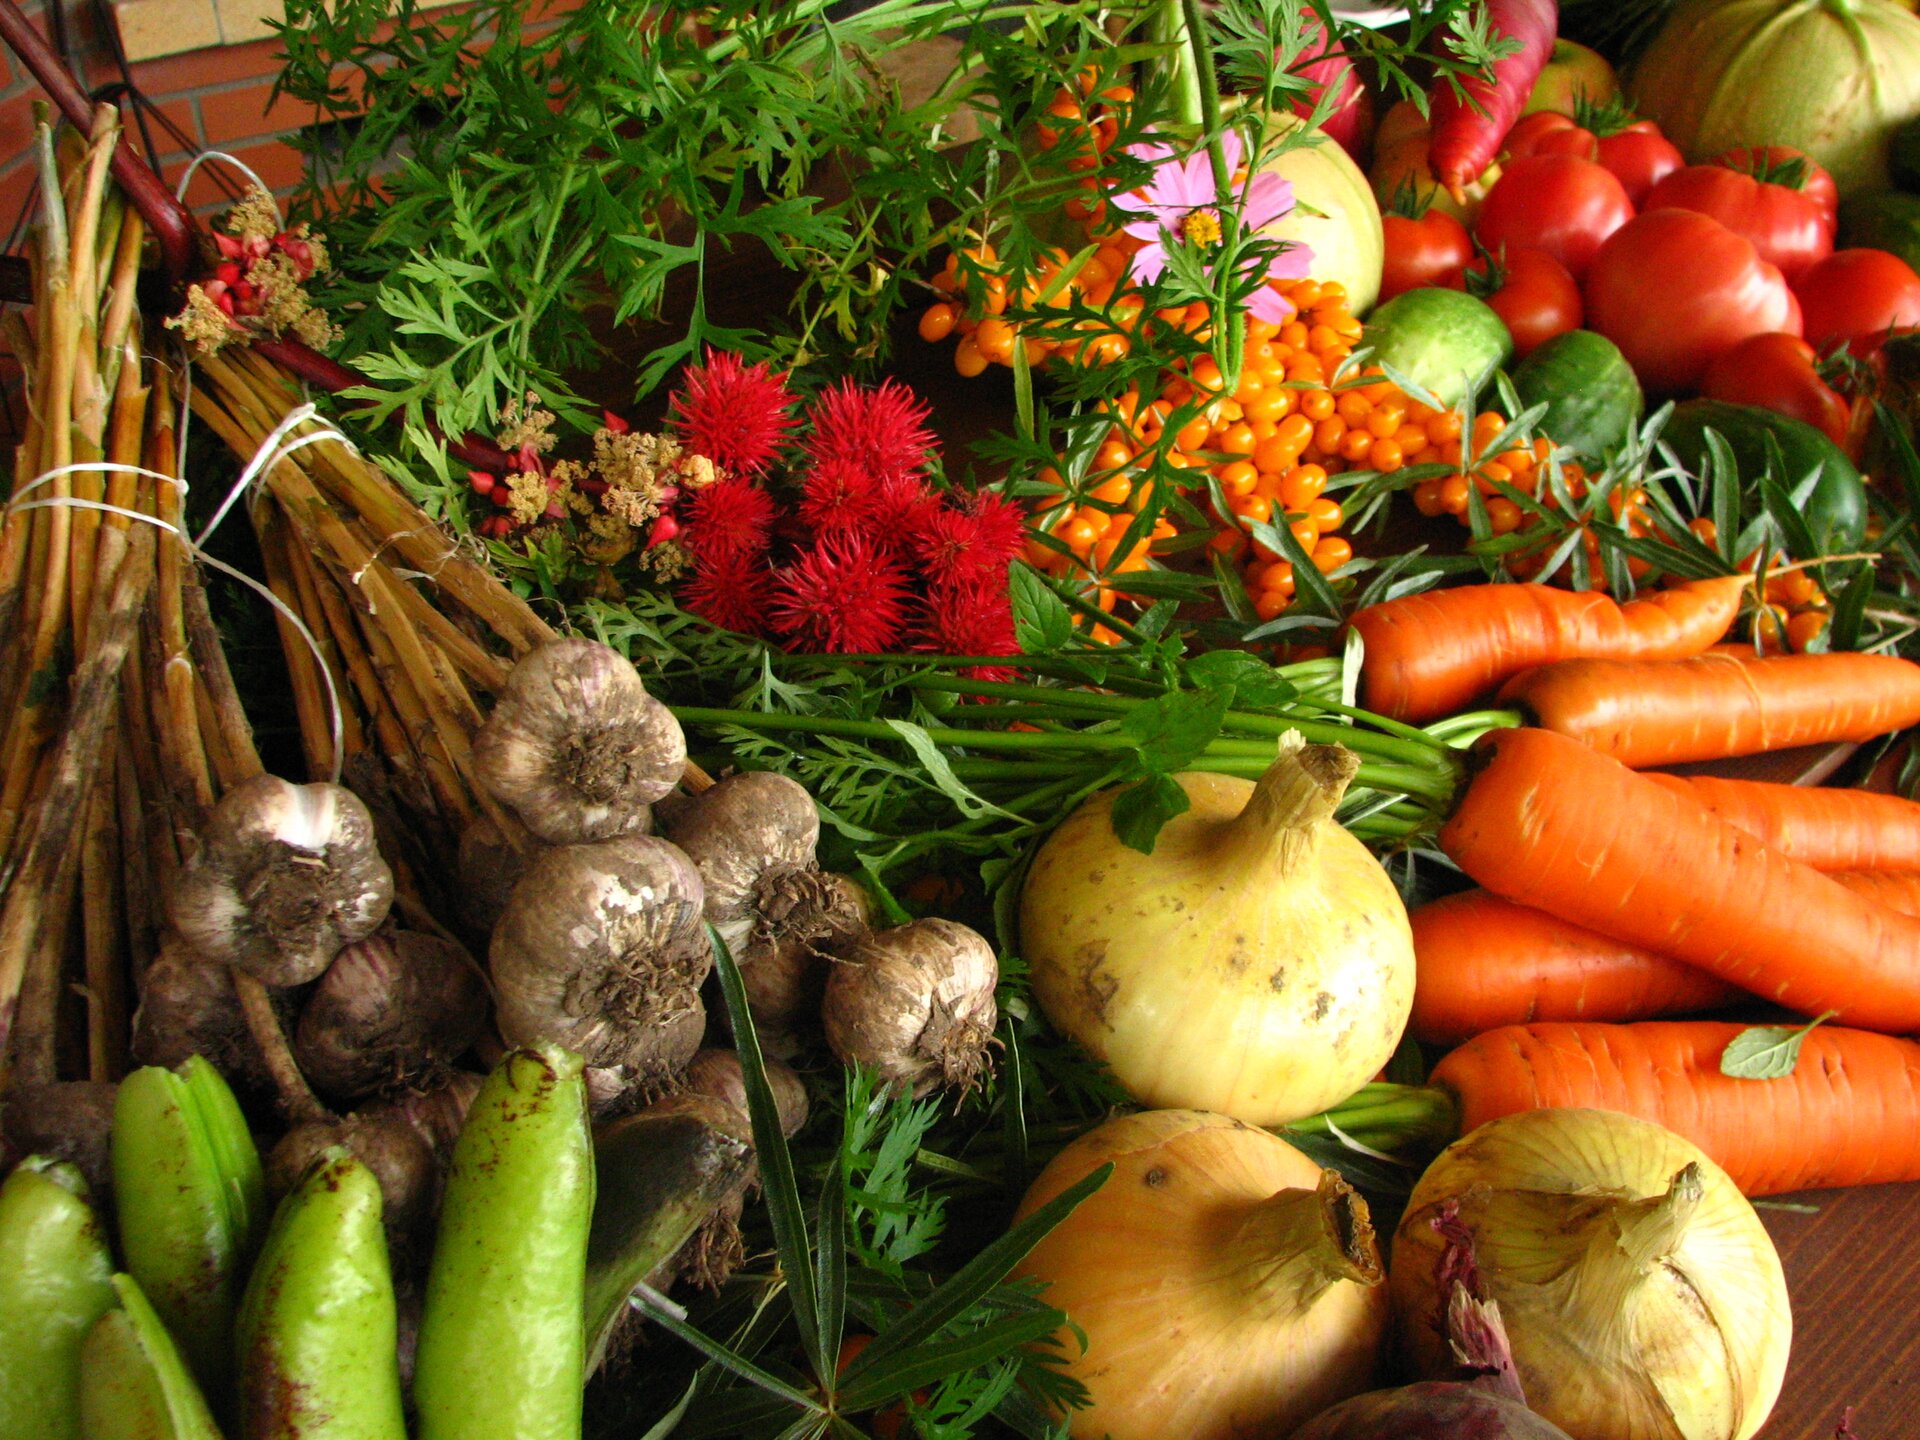 Na zdjęciu widocznych jest wiele gatunków warzyw leżących na stole. Znajdują się tam między innymi: marchewki, cebule, czosnek, pomidory, papryki oraz ogórki.